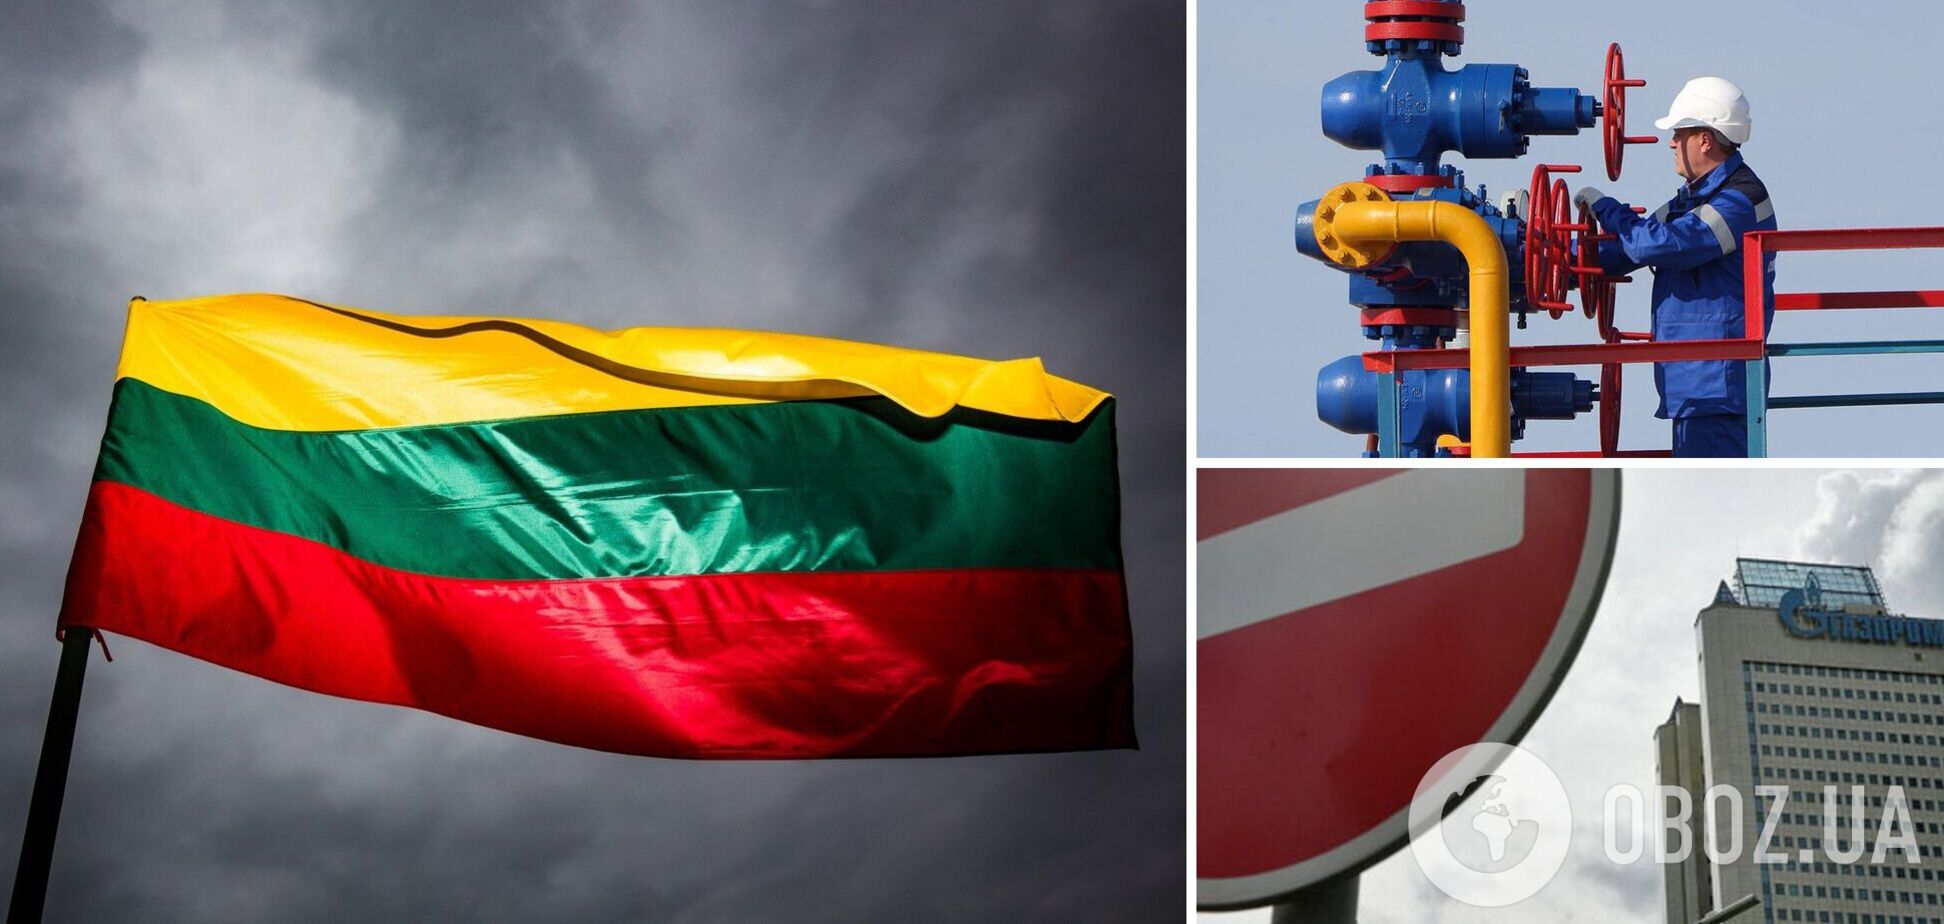 Литва первой в ЕС отказалась от российского газа: заявление властей